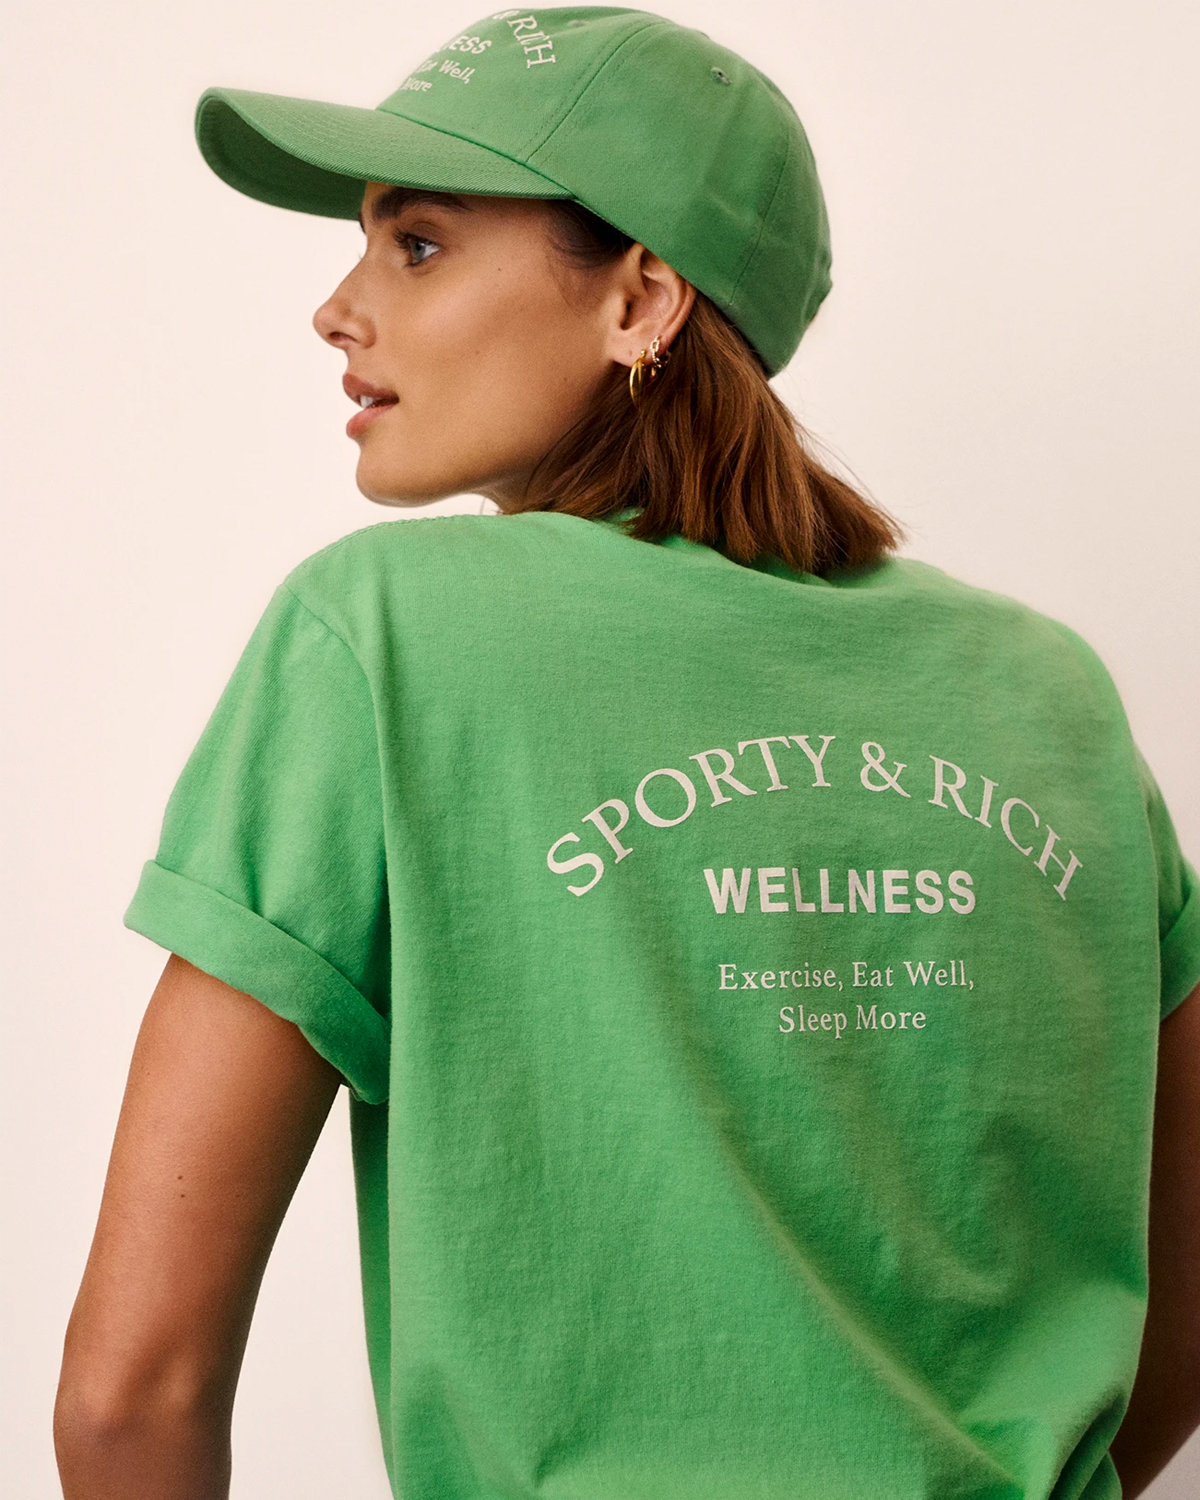 Wellness Studio Hat Sporty & Rich Headwear Caps Green